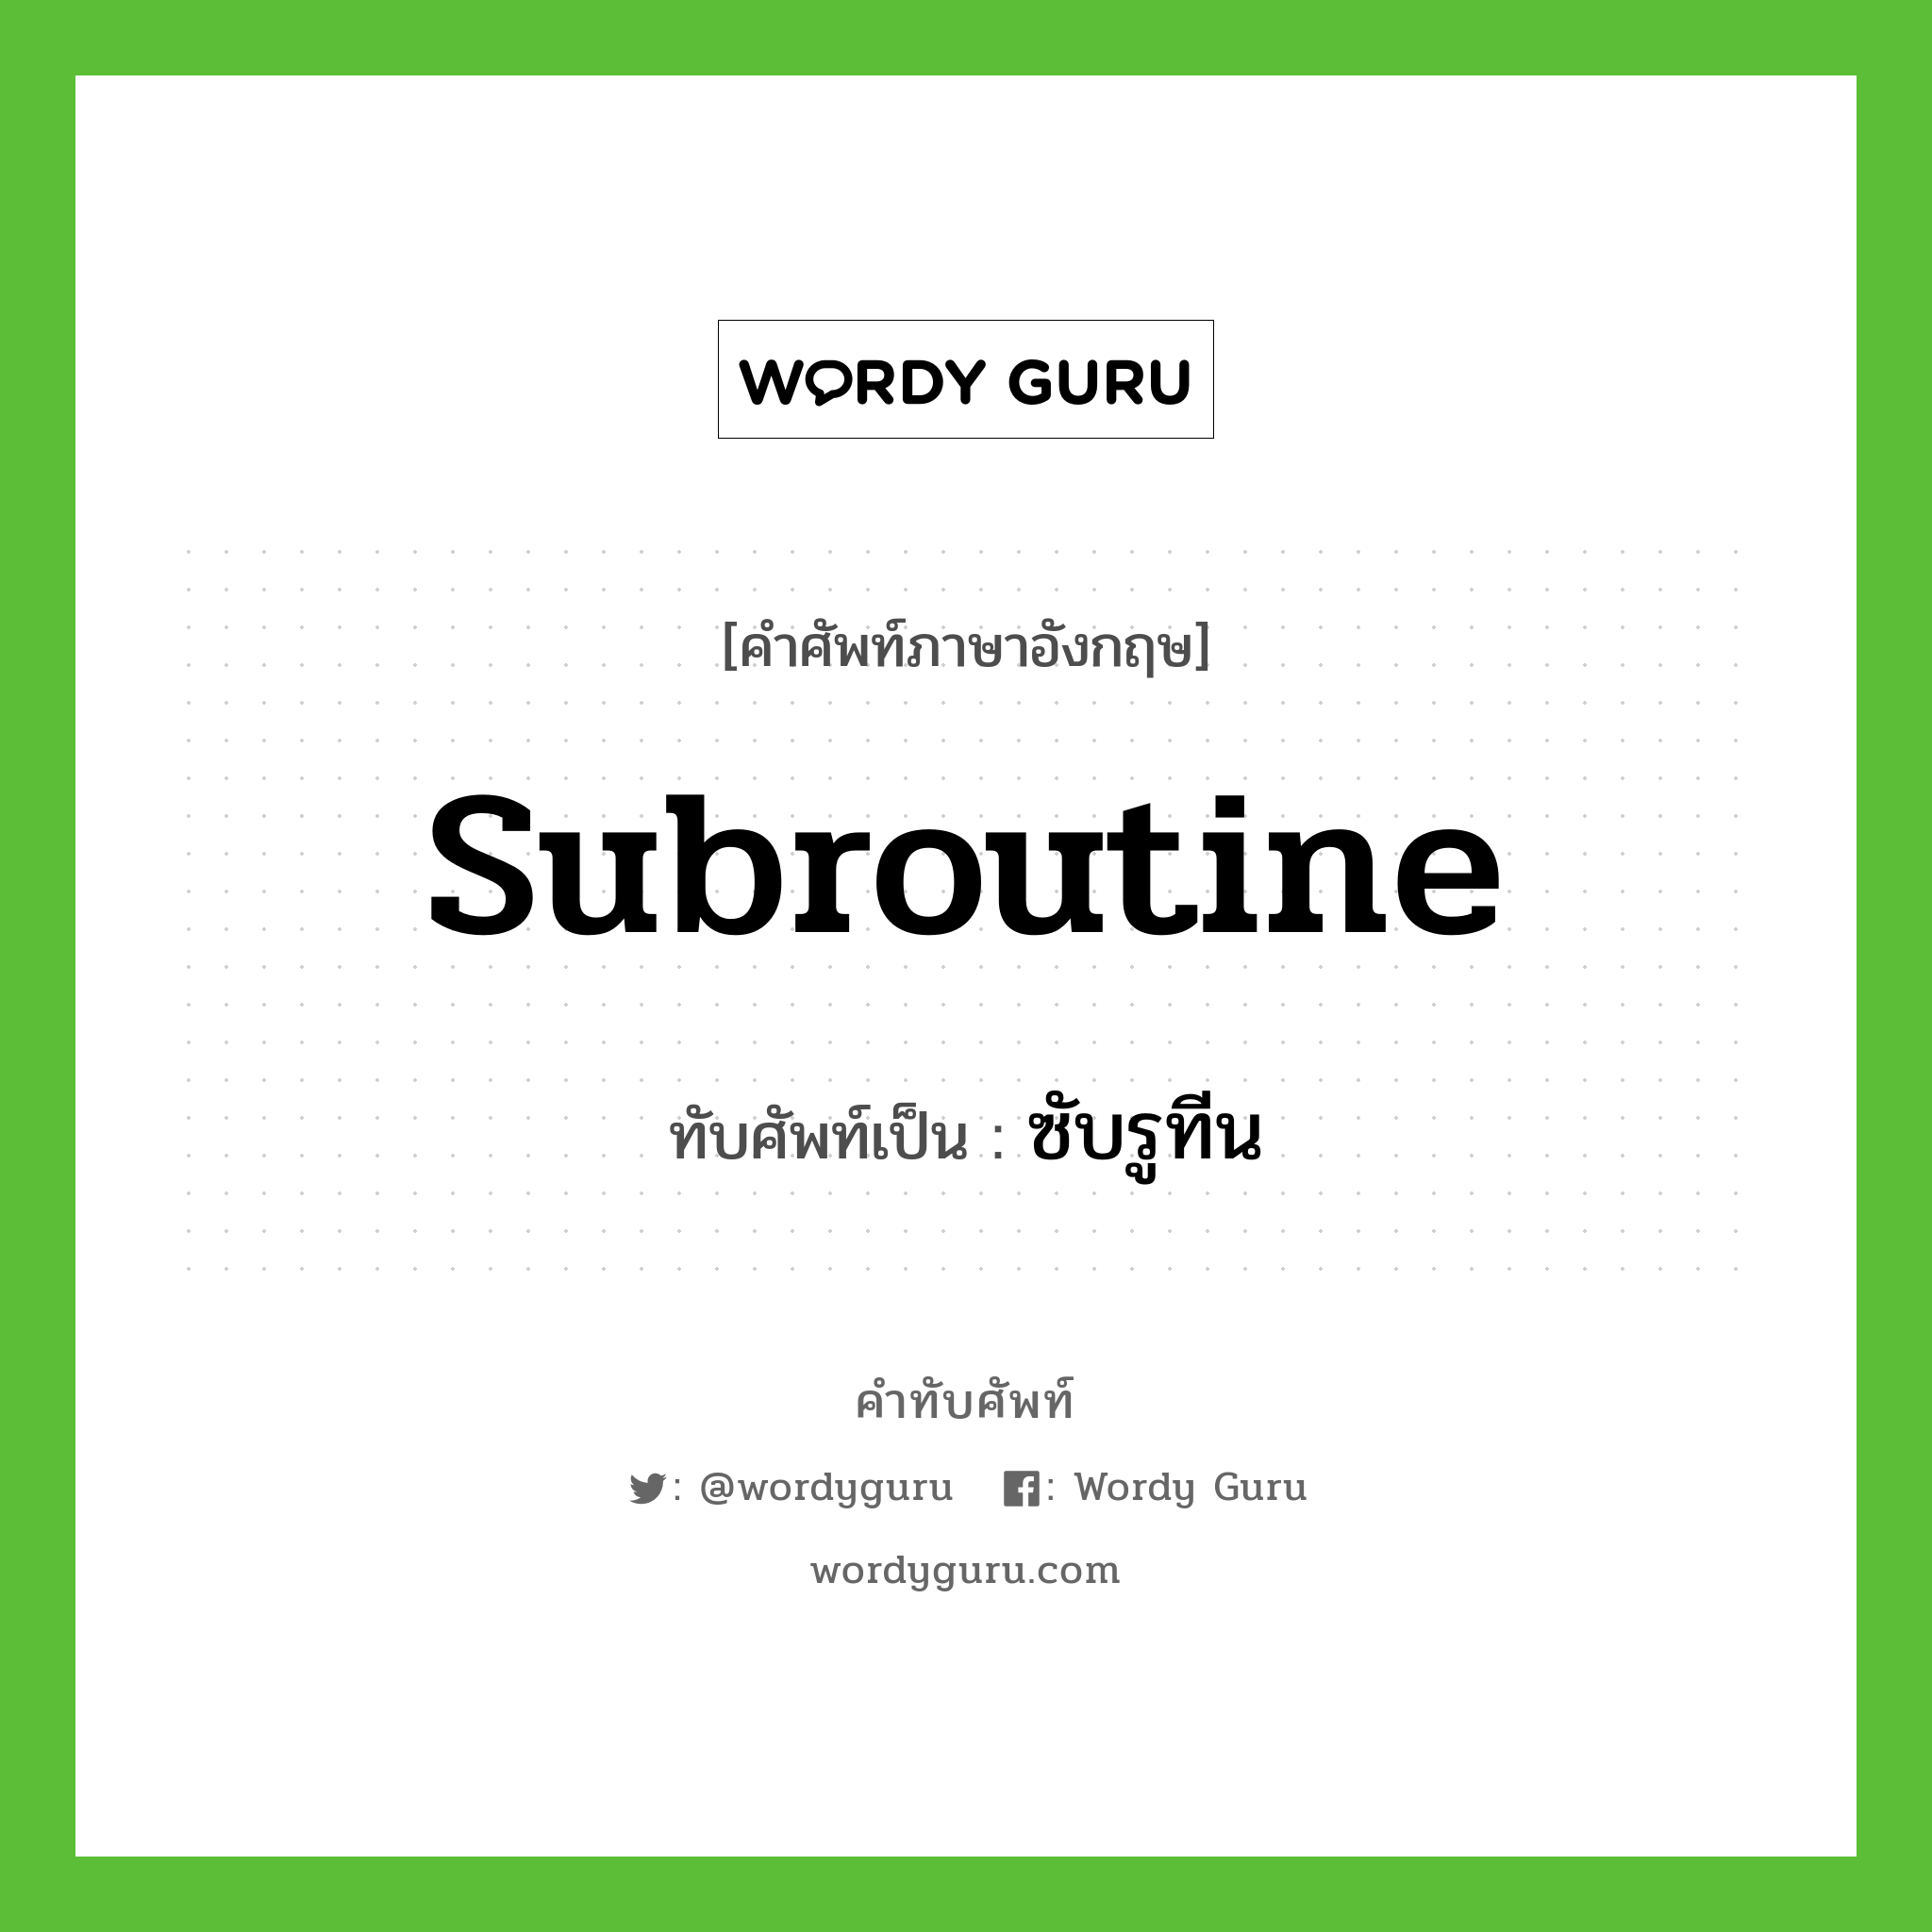 subroutine เขียนเป็นคำไทยว่าอะไร?, คำศัพท์ภาษาอังกฤษ subroutine ทับศัพท์เป็น ซับรูทีน